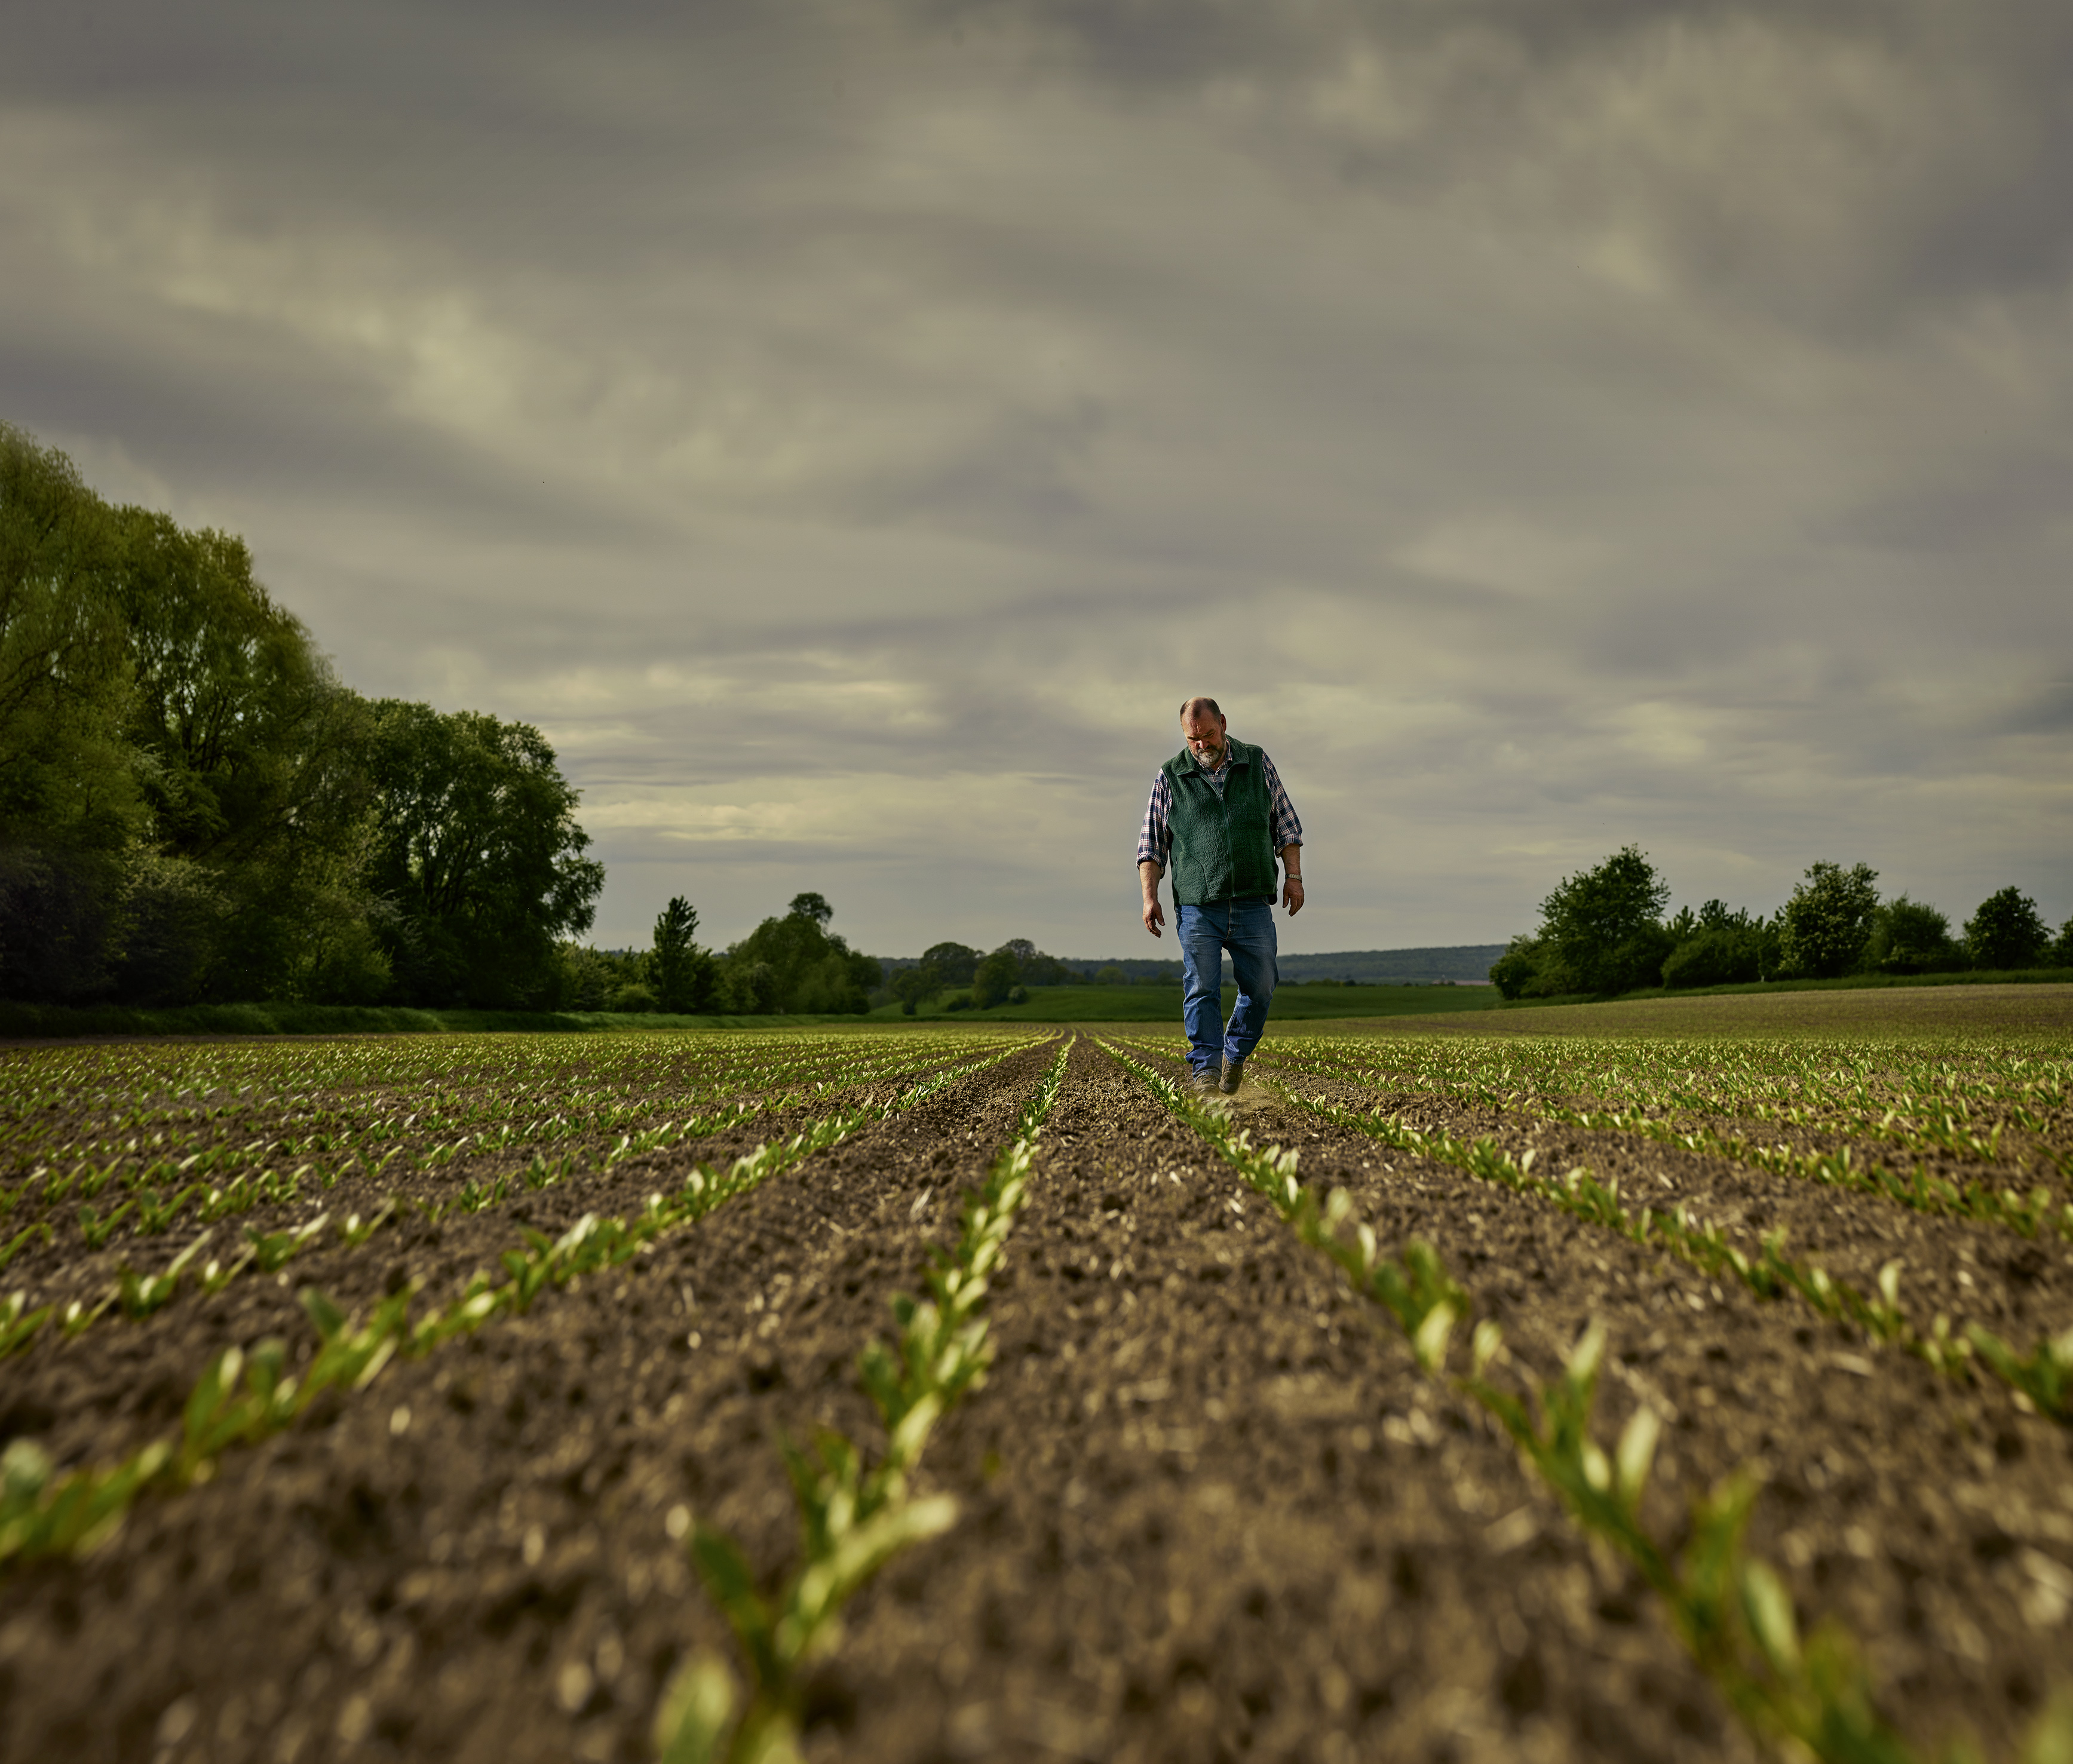 Фото с нижнего ракурса: фермер средних лет идет по своему свекловичному полю, на котором видны прорастающие всходы